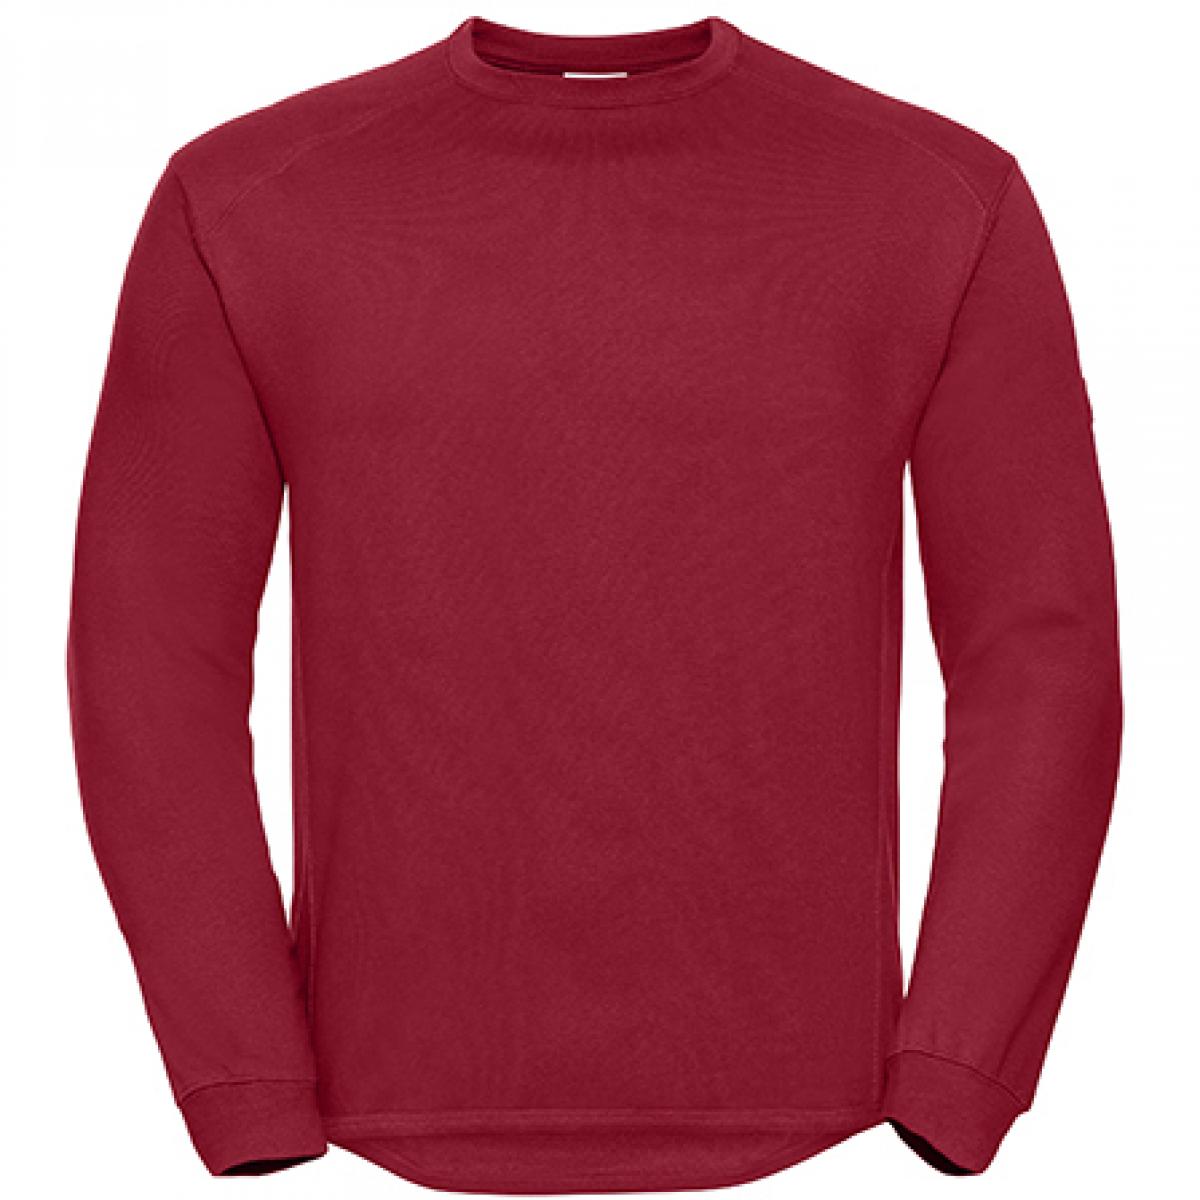 Hersteller: Russell Herstellernummer: R-013M-0 Artikelbezeichnung: Workwear-Sweatshirt / Pullover Farbe: Classic Red